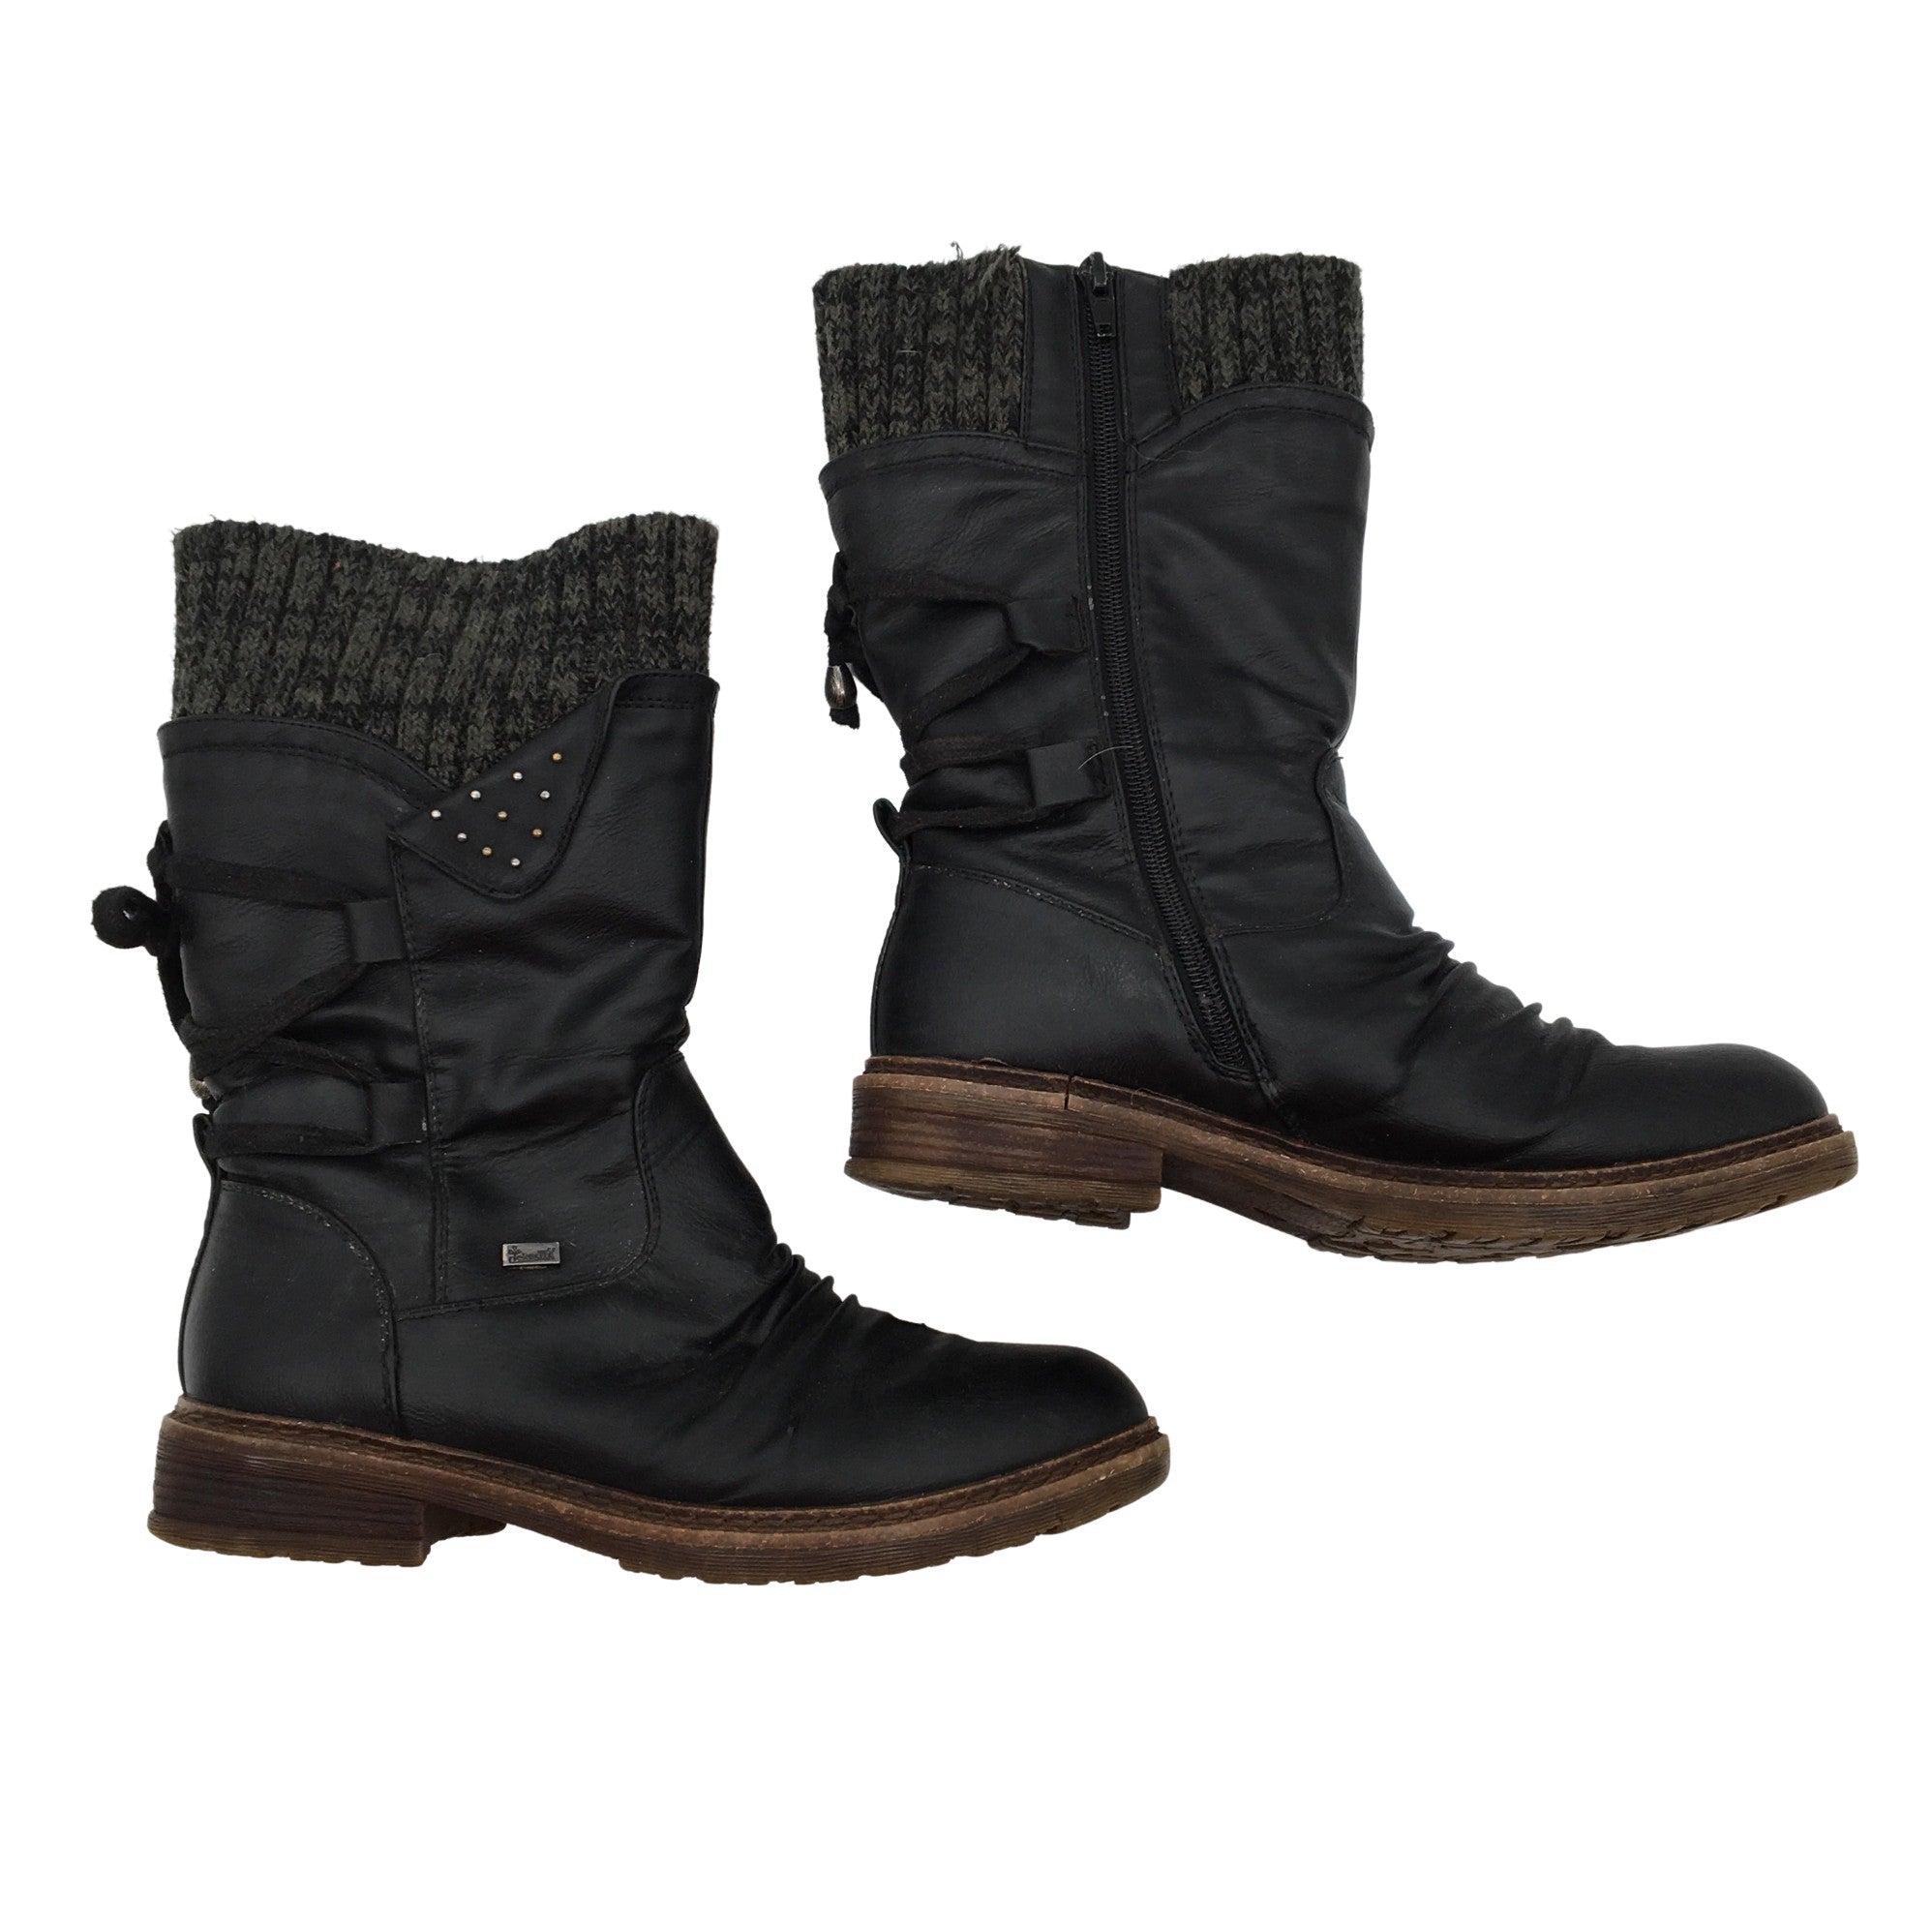 Handvest de eerste verkorten Women's Rieker Boots, size 38 (Black) | Emmy